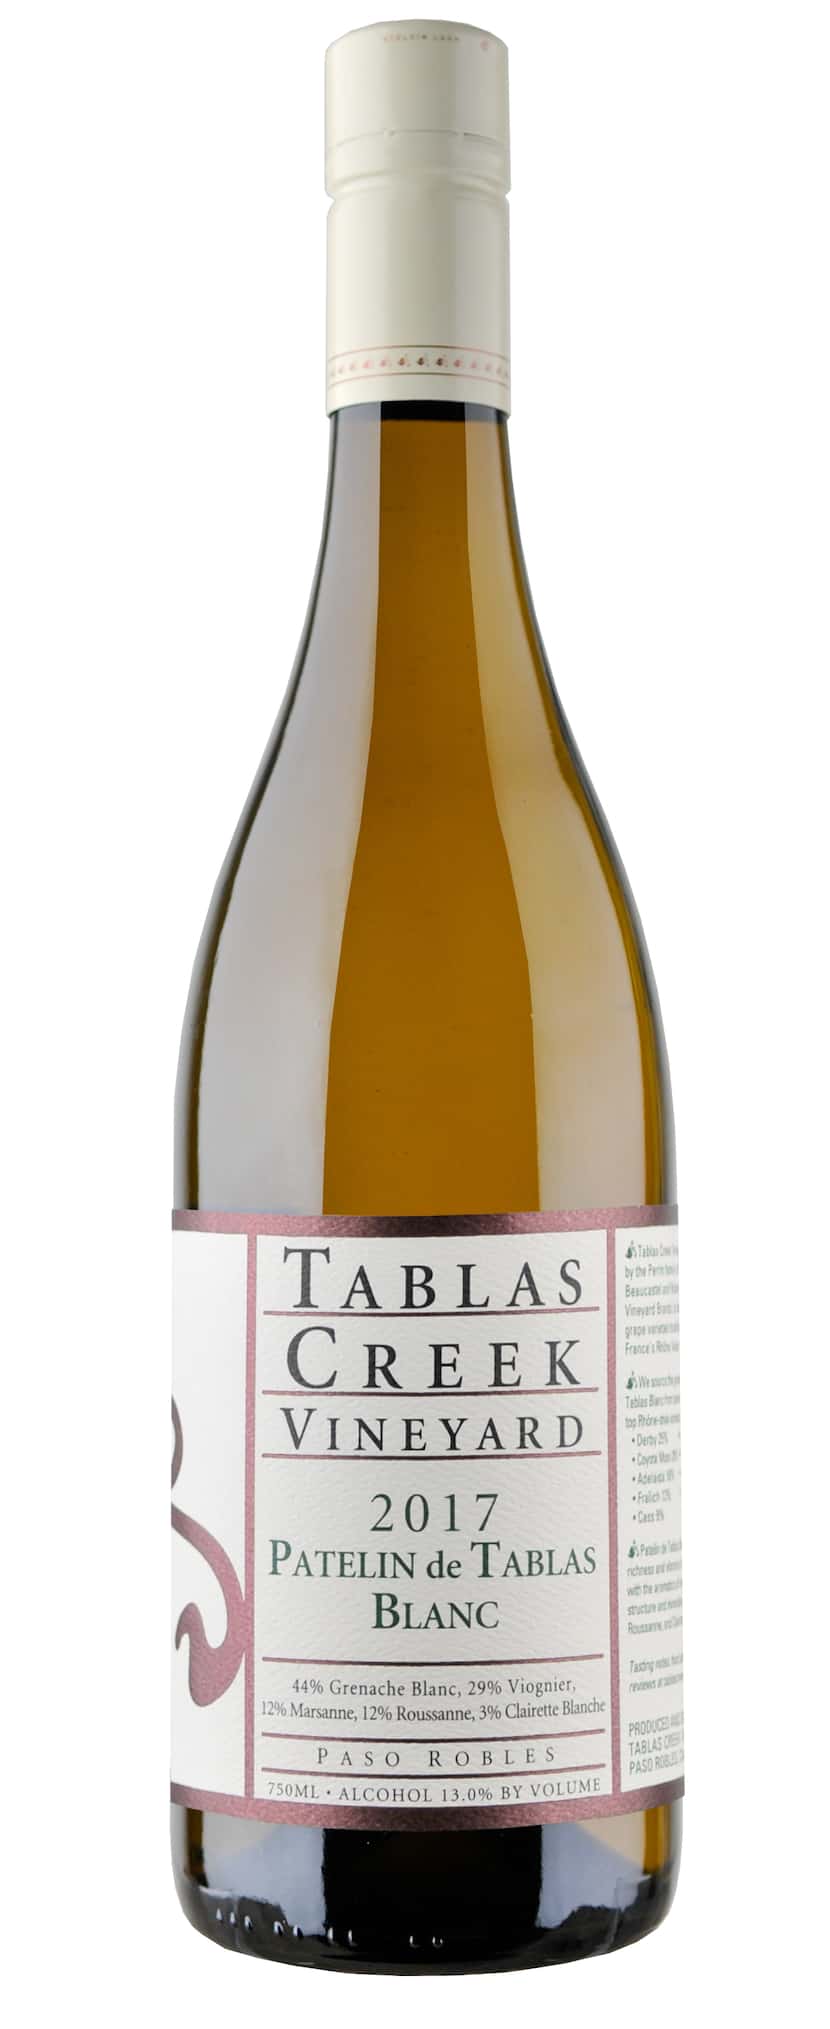 Tablas Creek Vineyard Patelin de Tablas Blanc